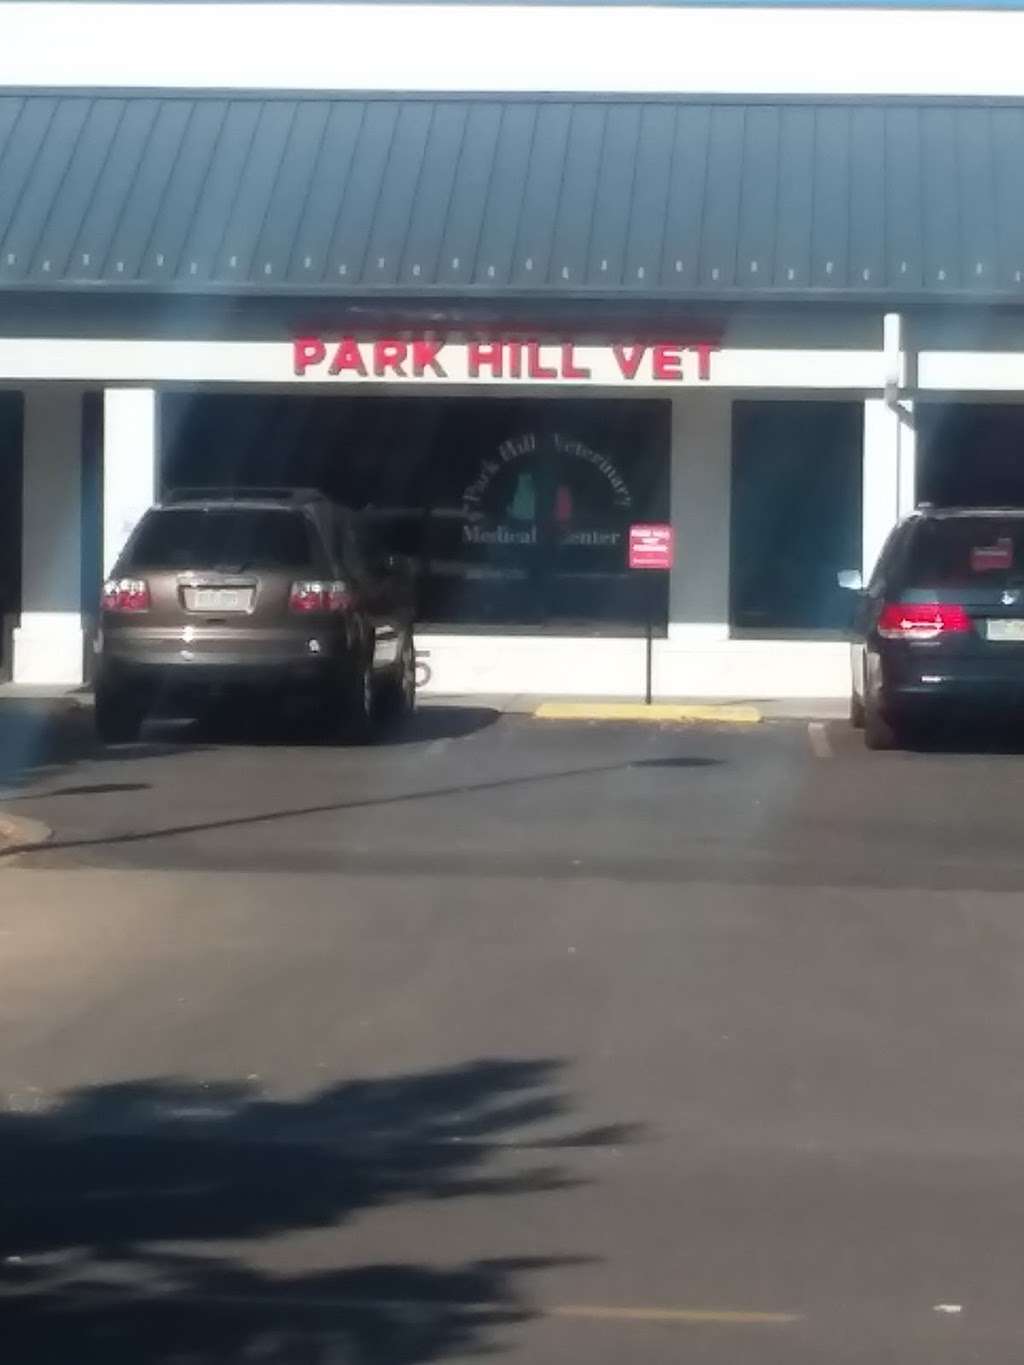 Park Hill Veterinary Medical Center | 2255 Oneida St, Denver, CO 80207 | Phone: (303) 388-2255